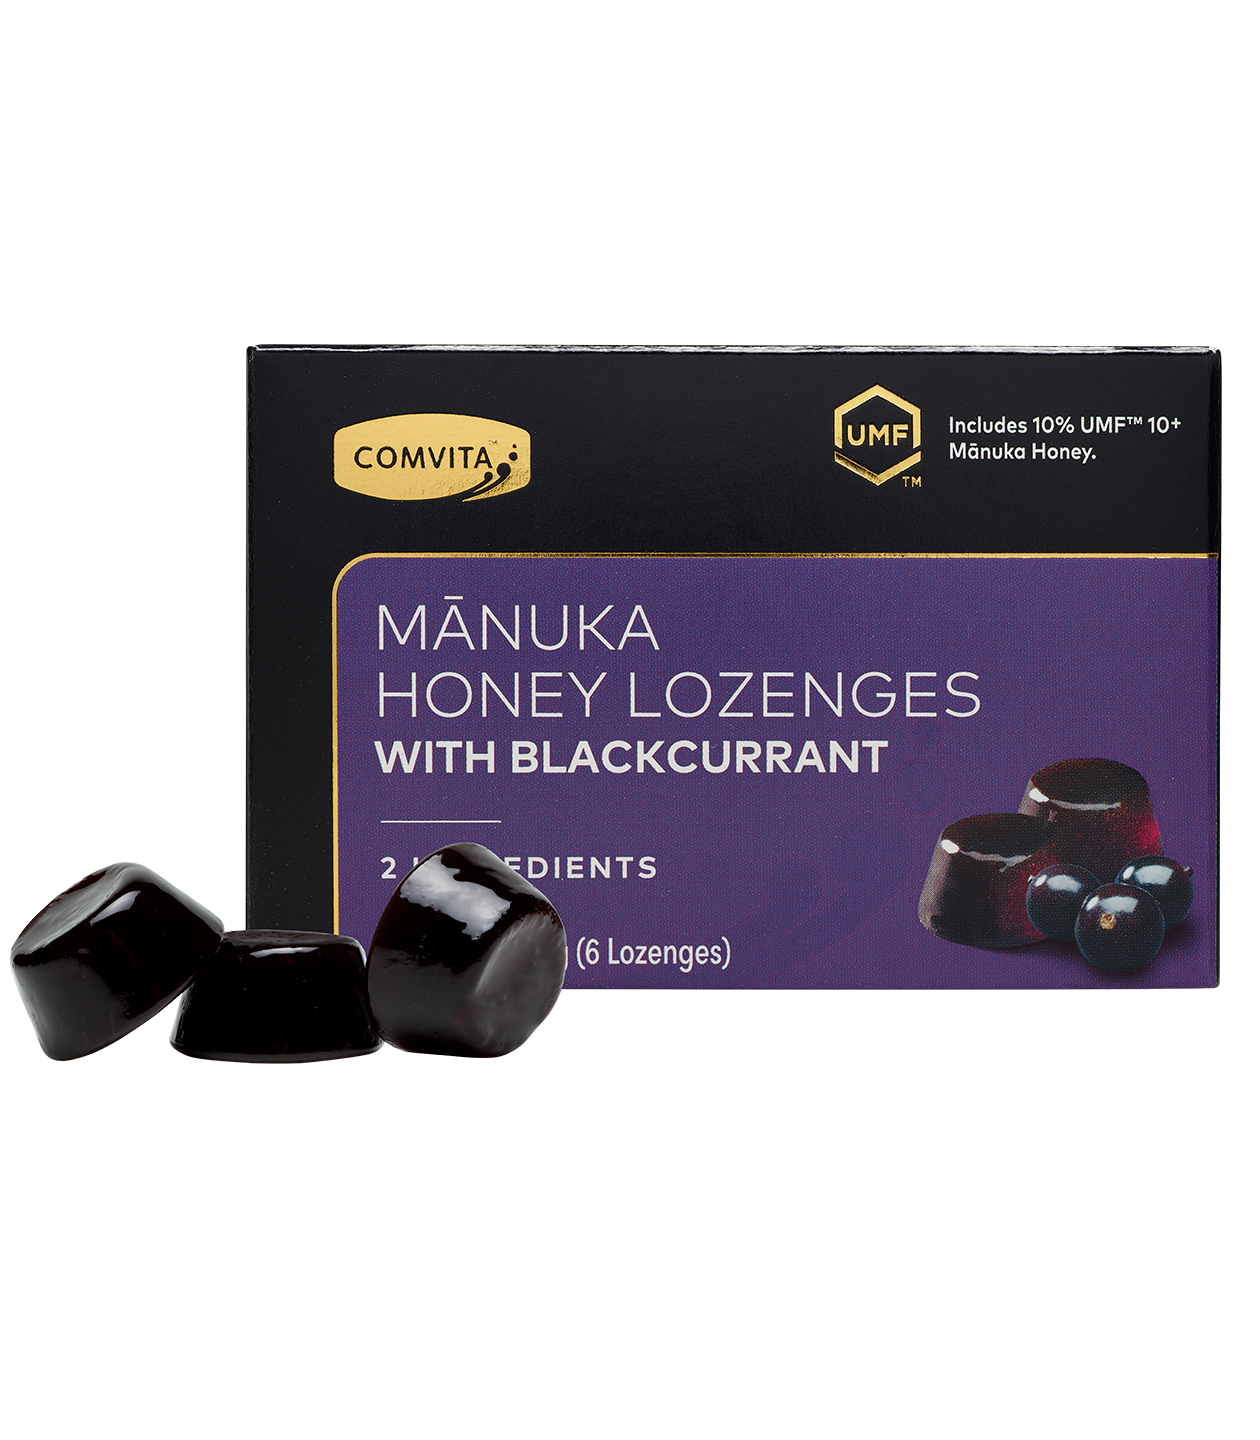 manuka honey lozenges with blackcurrant